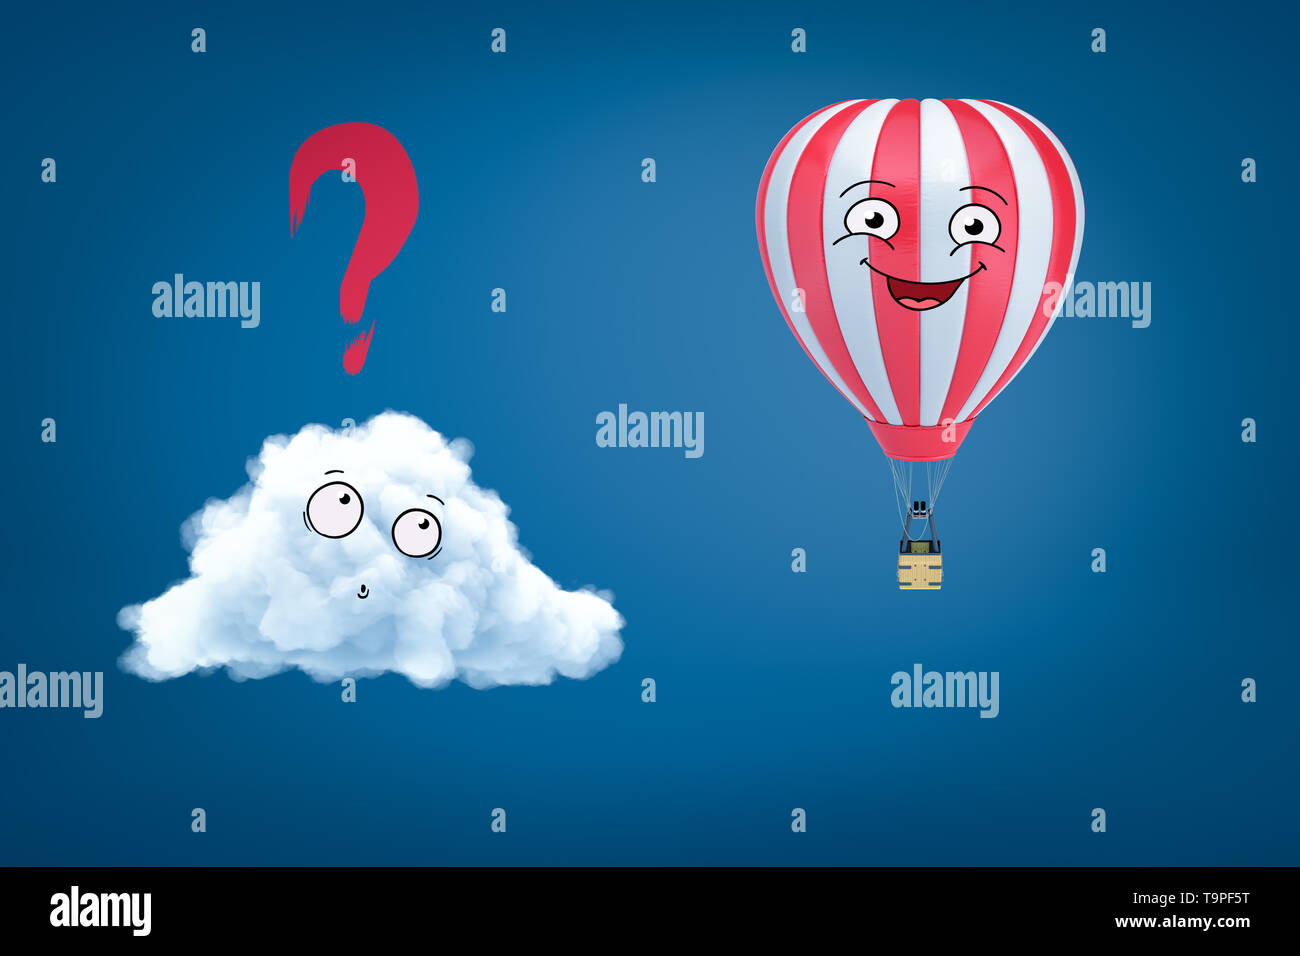 Le rendu 3D de cartoon blanc smiley nuage avec point d'interrogation ci-dessus et heureux caricature smiley hot air balloon sur fond bleu Banque D'Images